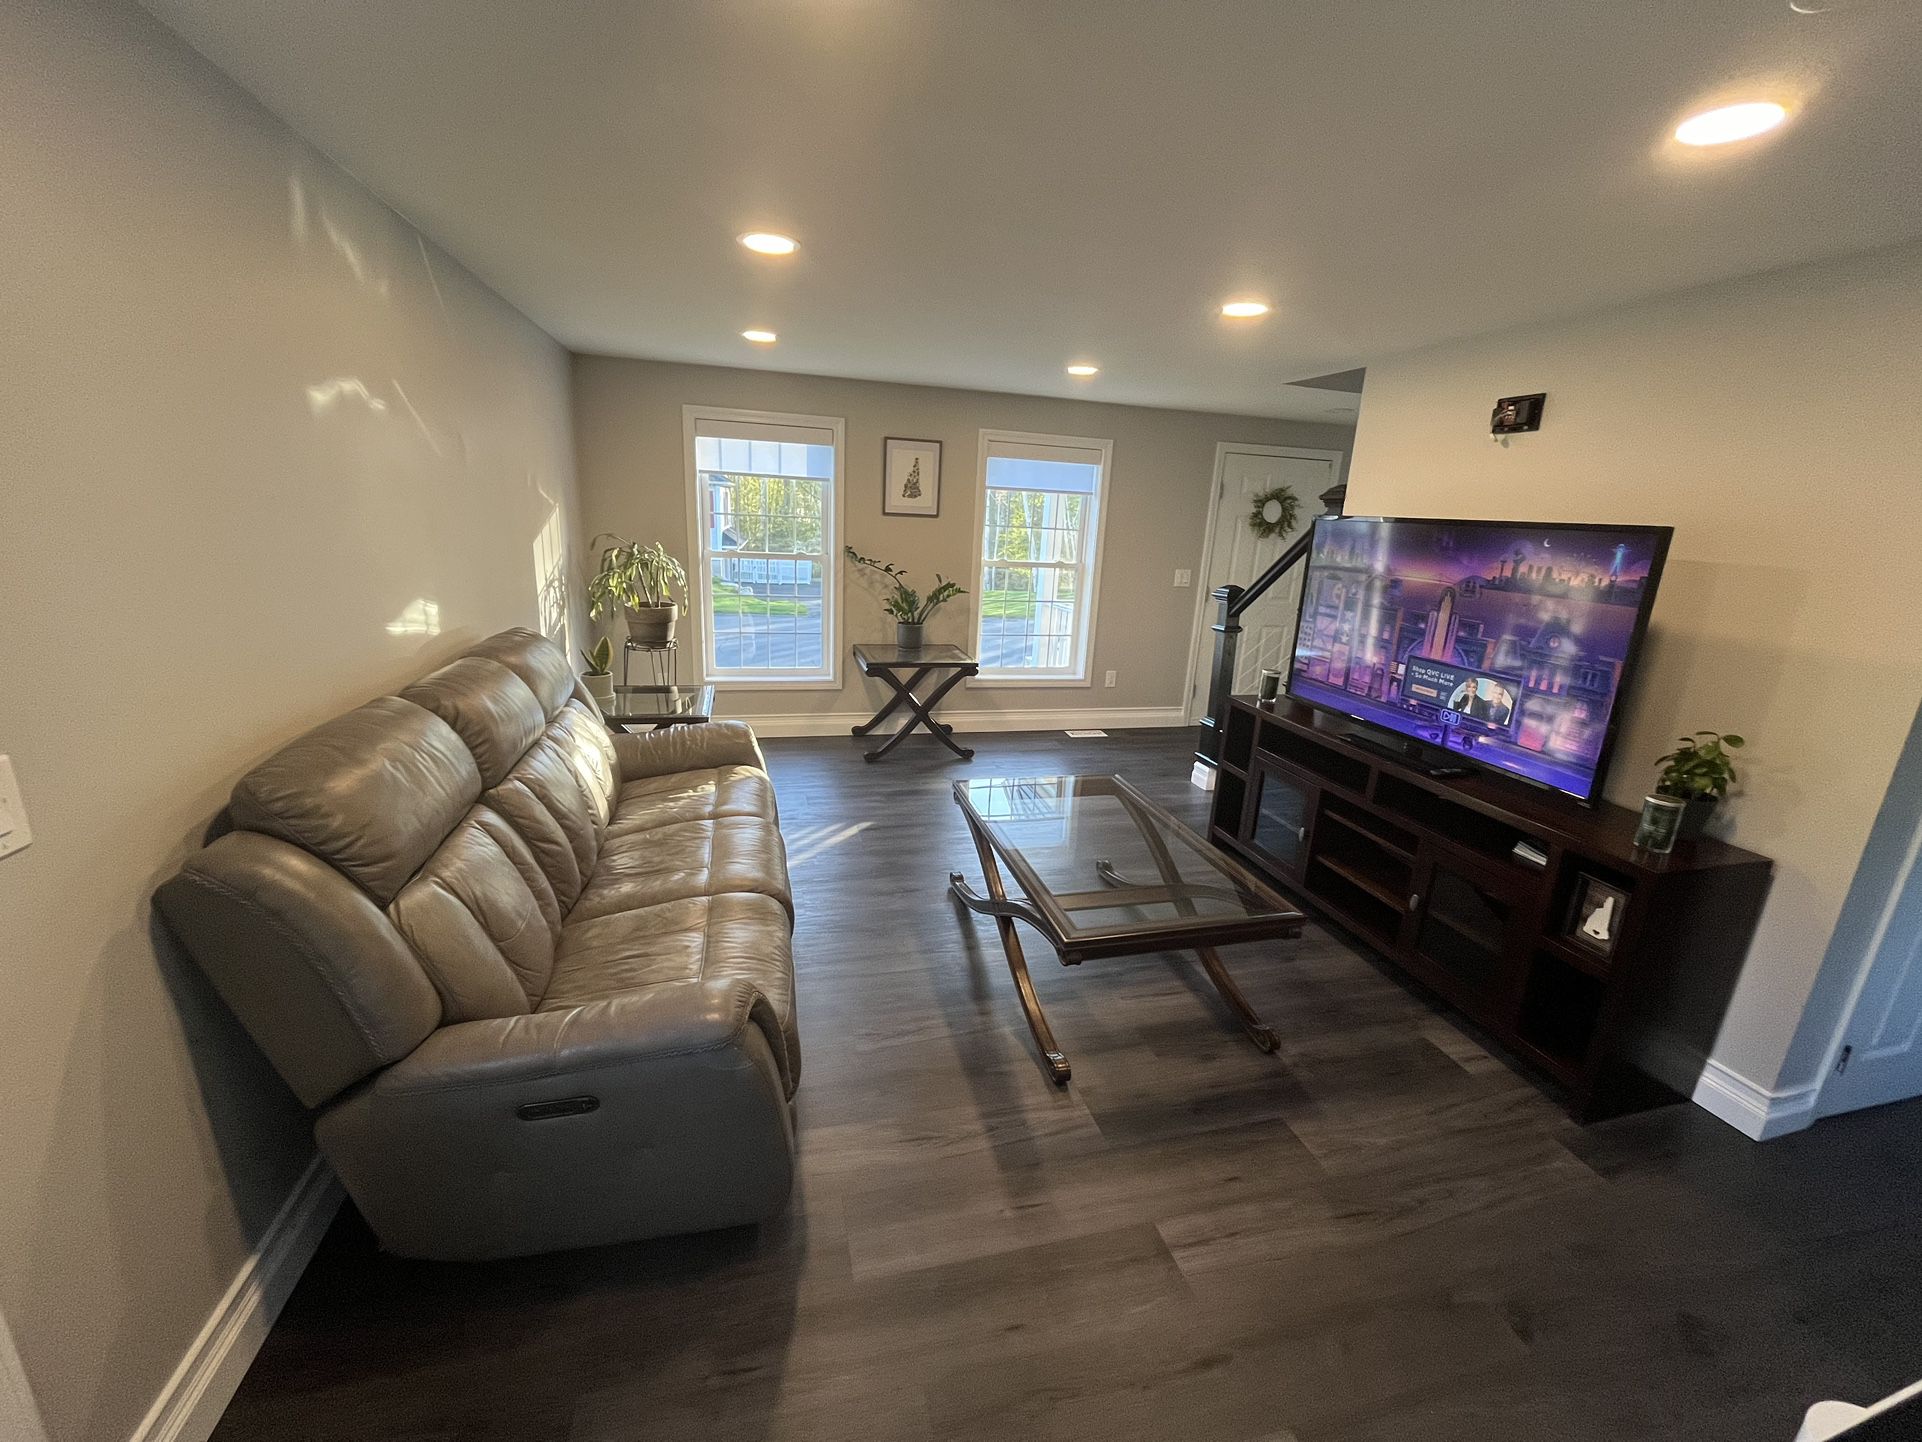 Complete Living Room Set